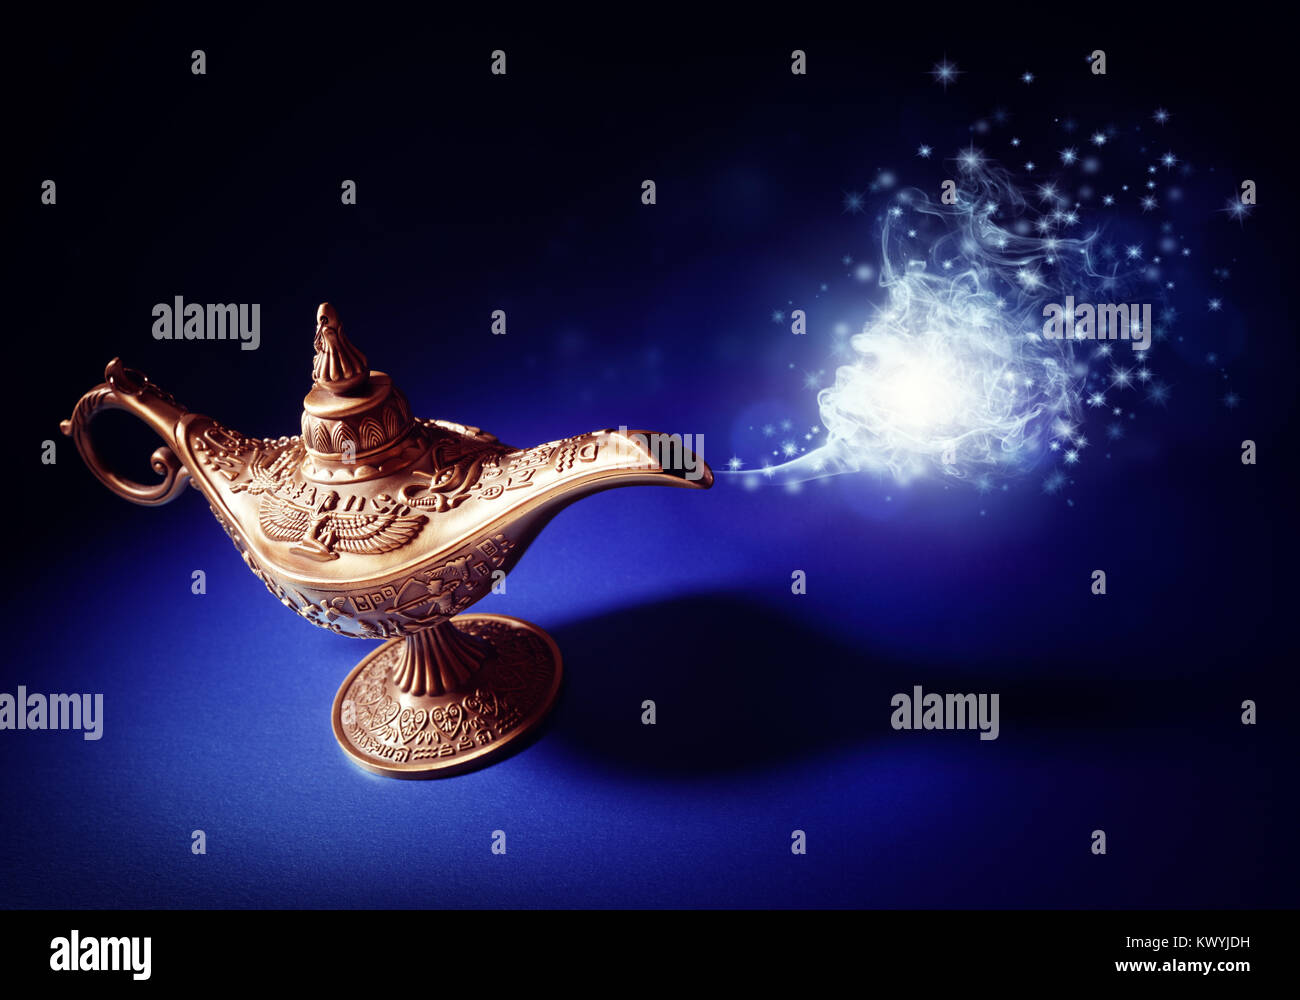 Lampe magique de l'histoire d'Aladin avec le génie apparaissant dans une fumée bleue concept pour qui souhaite, de chance et de magie Banque D'Images